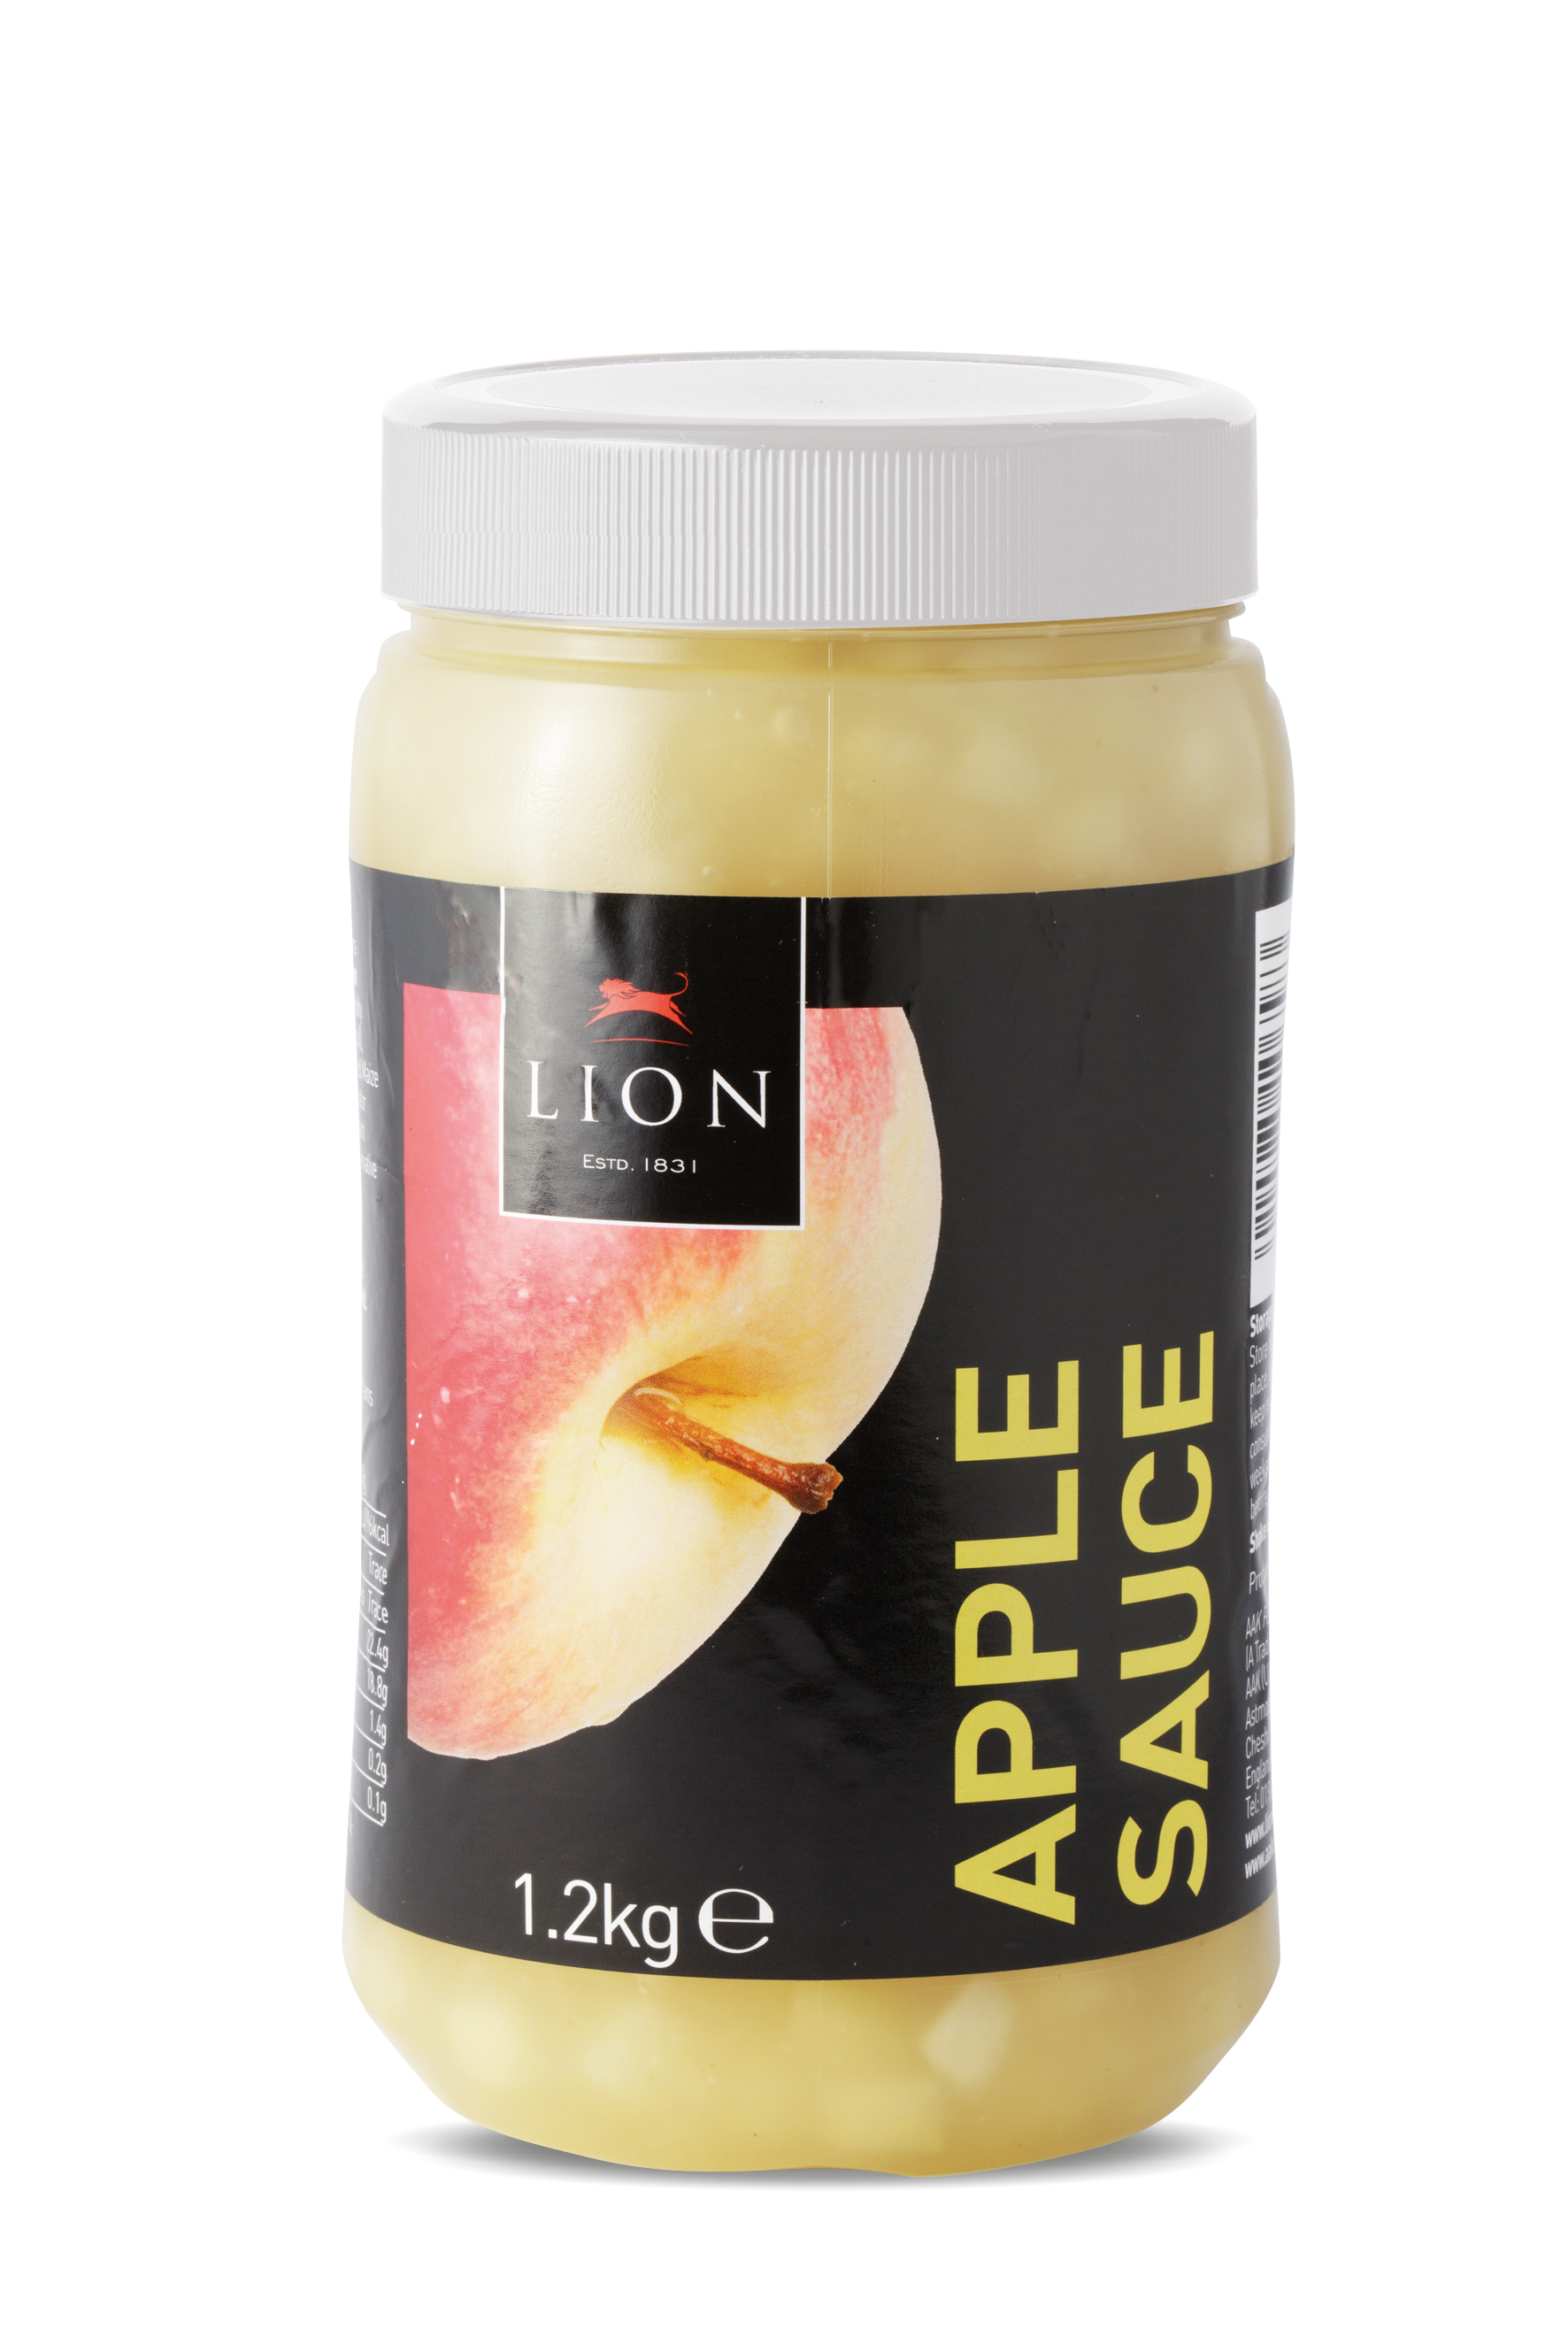 Lion Apple Sauce 1 2kg White Lid